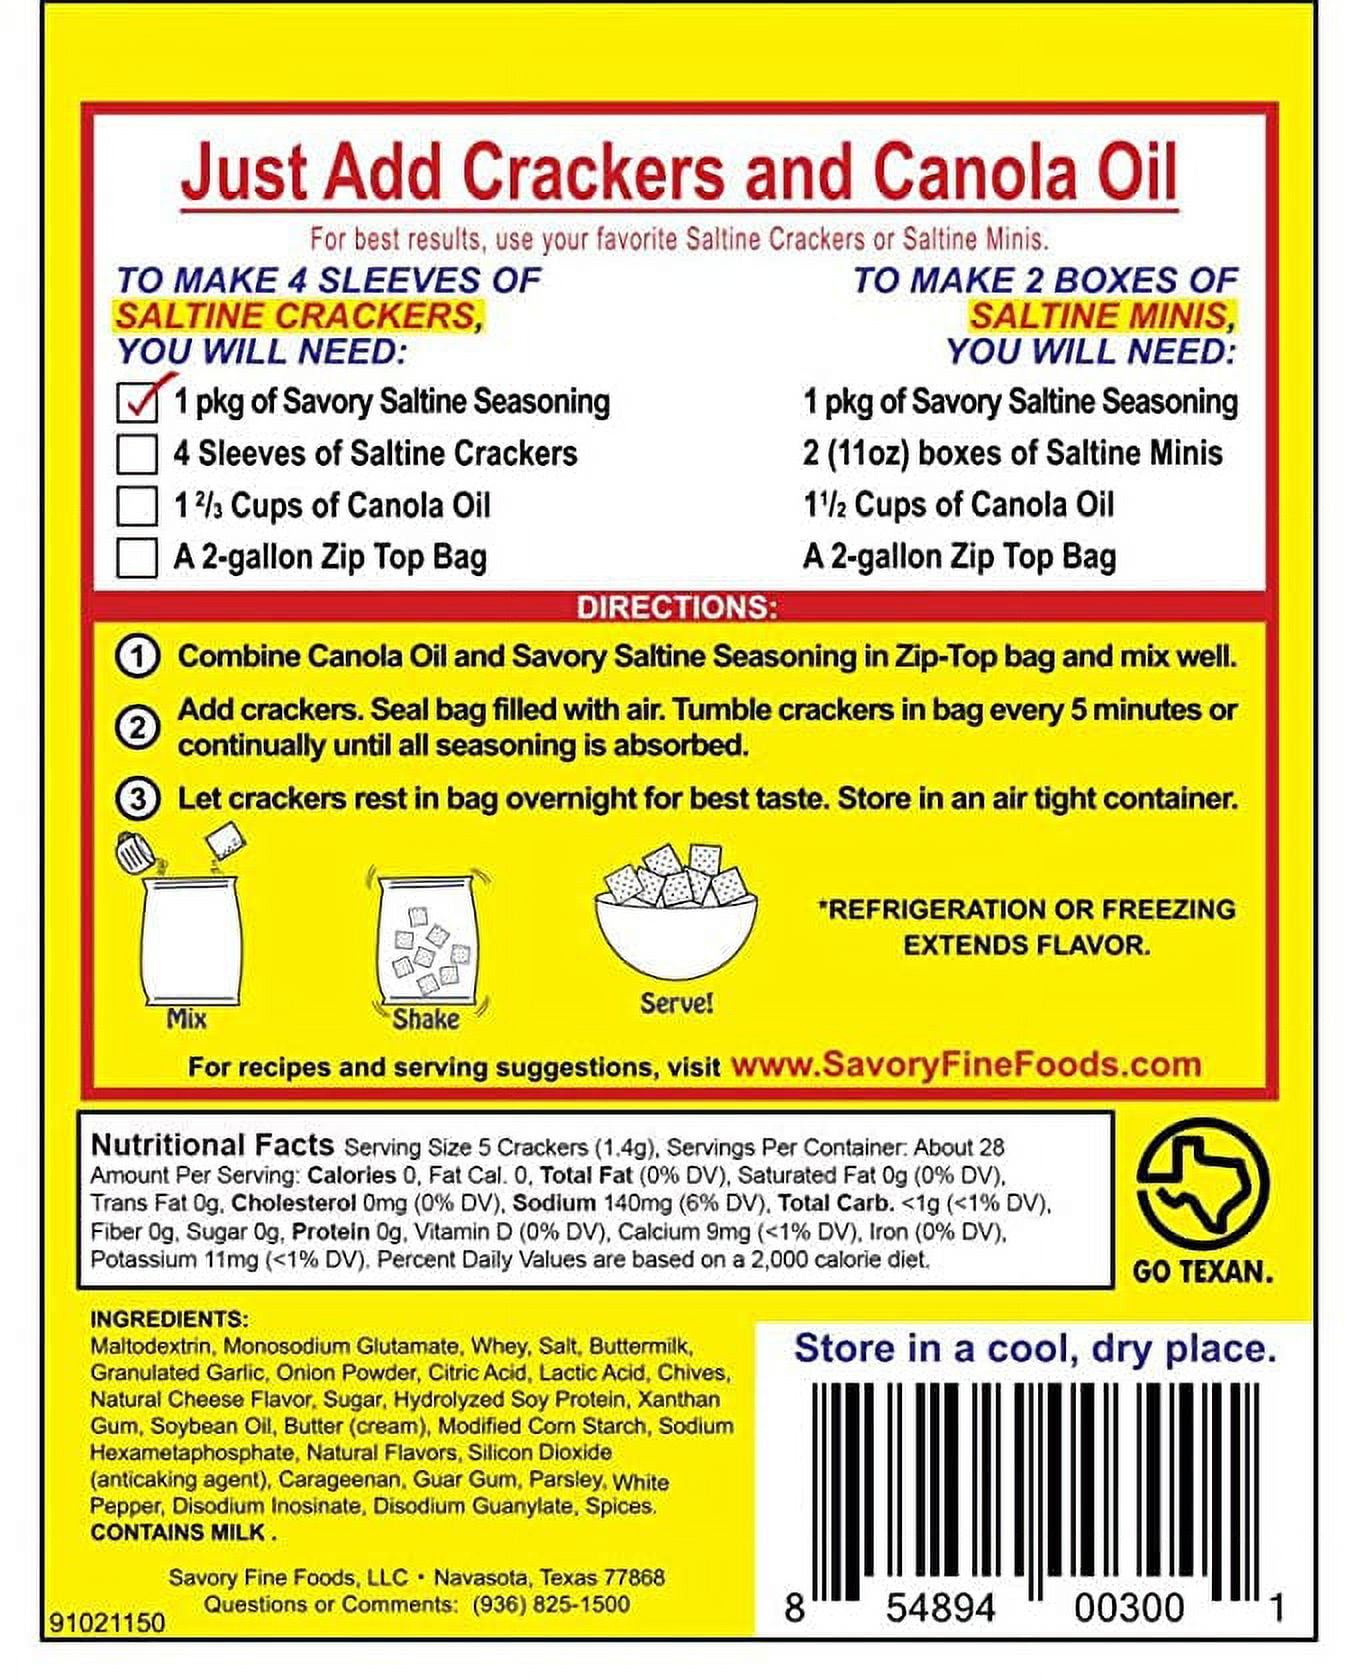 Cracker Girl Original Spicy Seasoning 7 oz – Cracker Seasonings